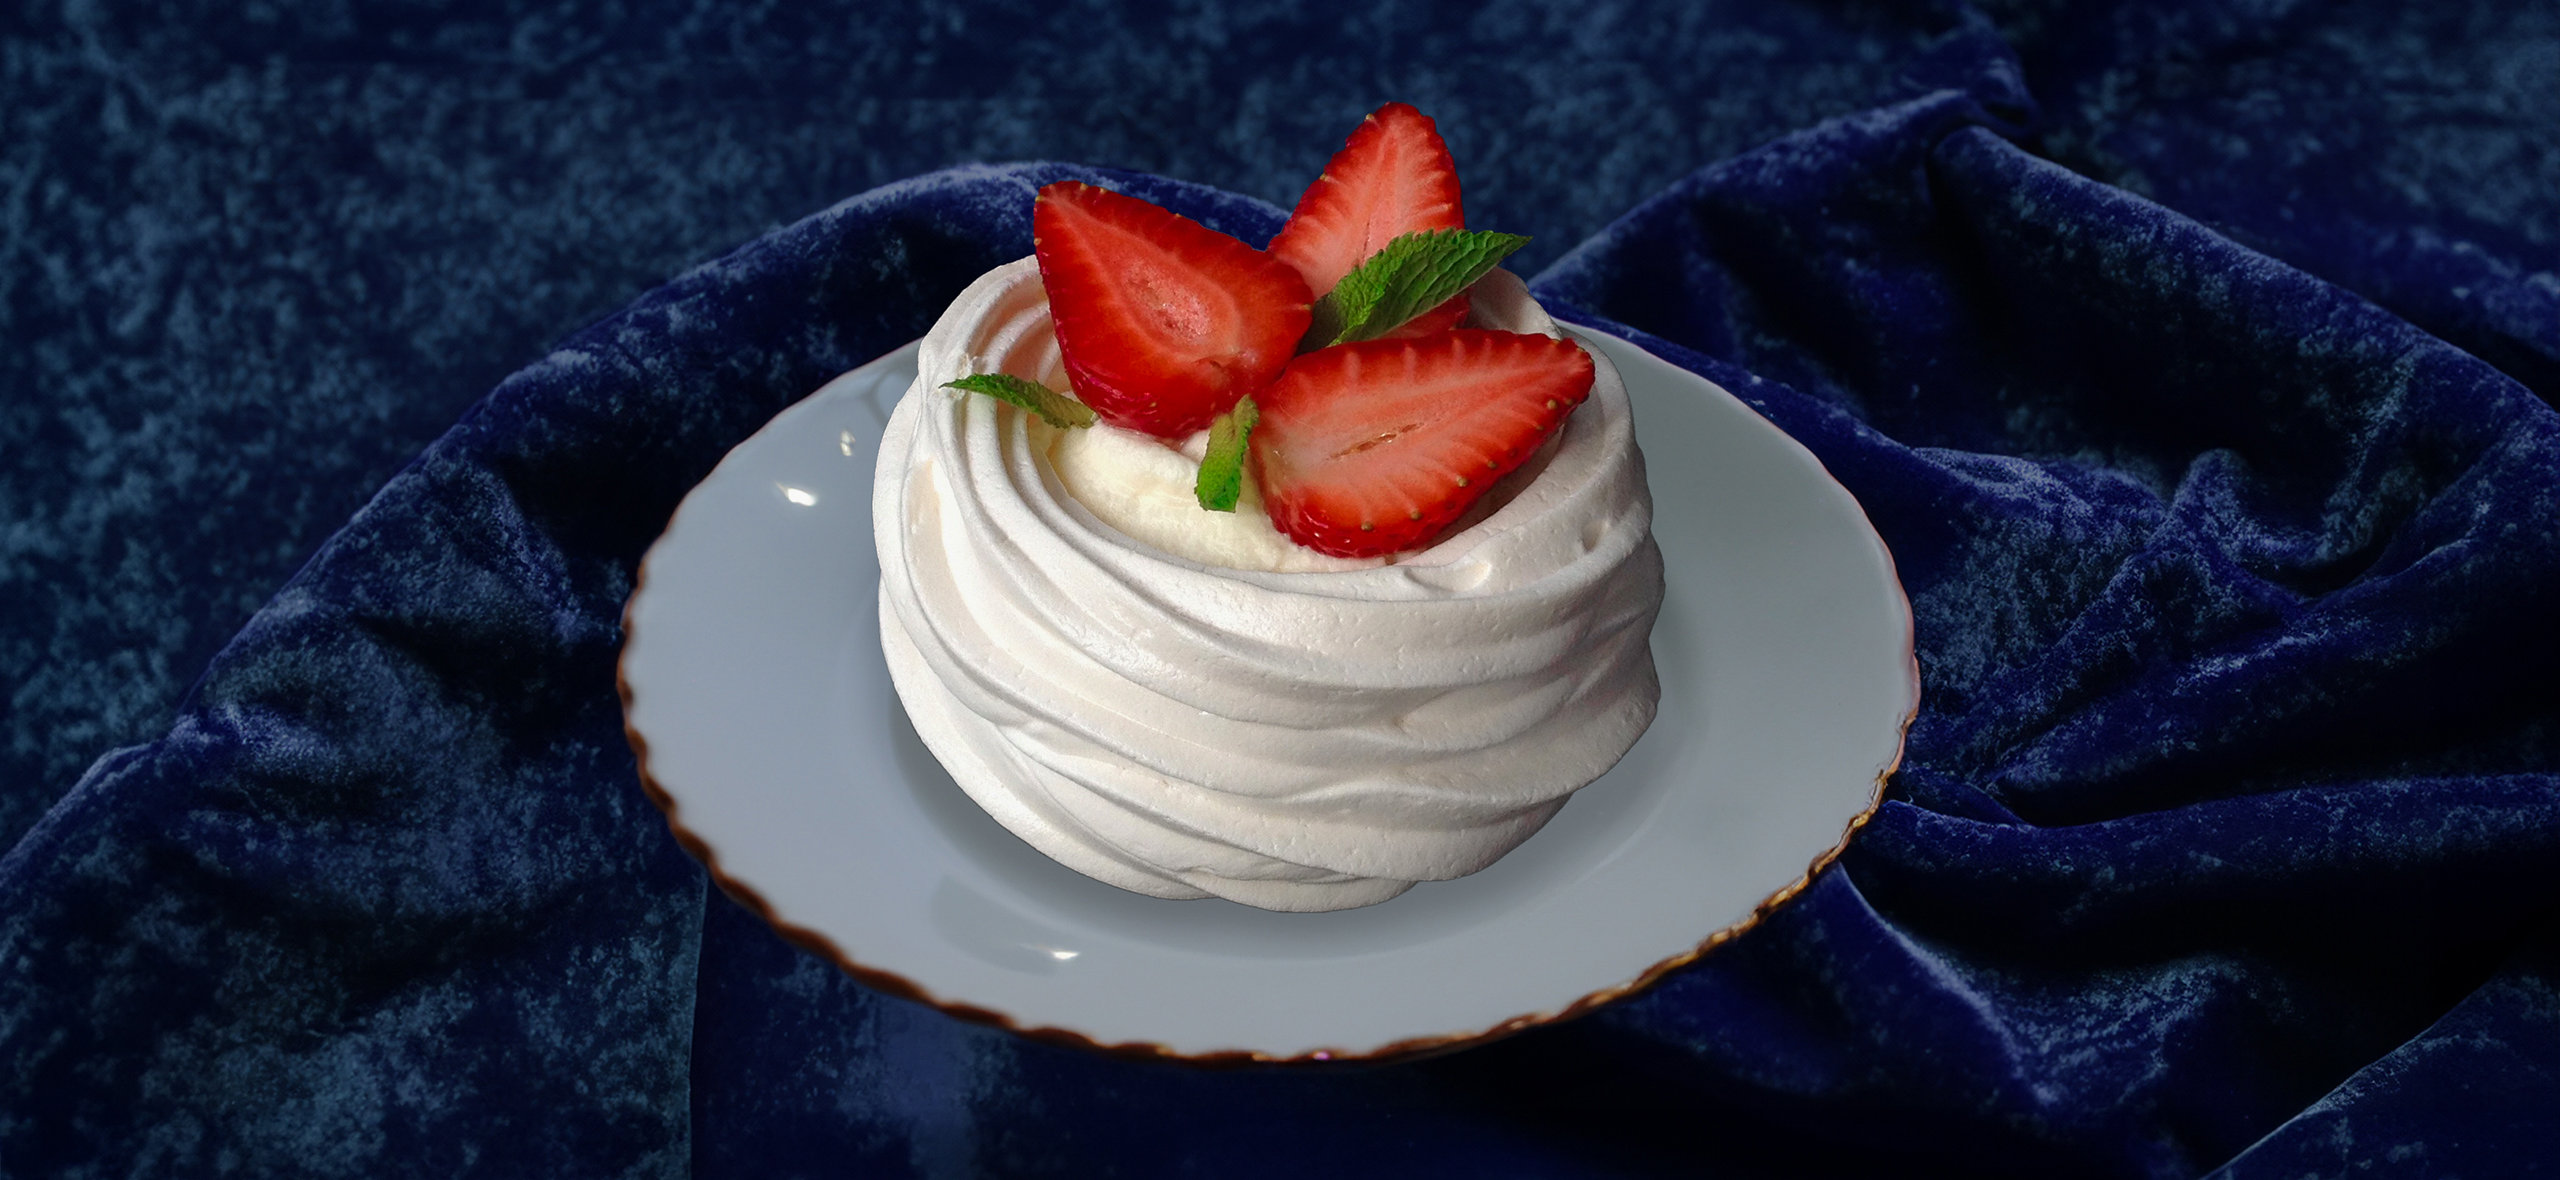 Рецепт десерта «Павлова» со свежими ягодами